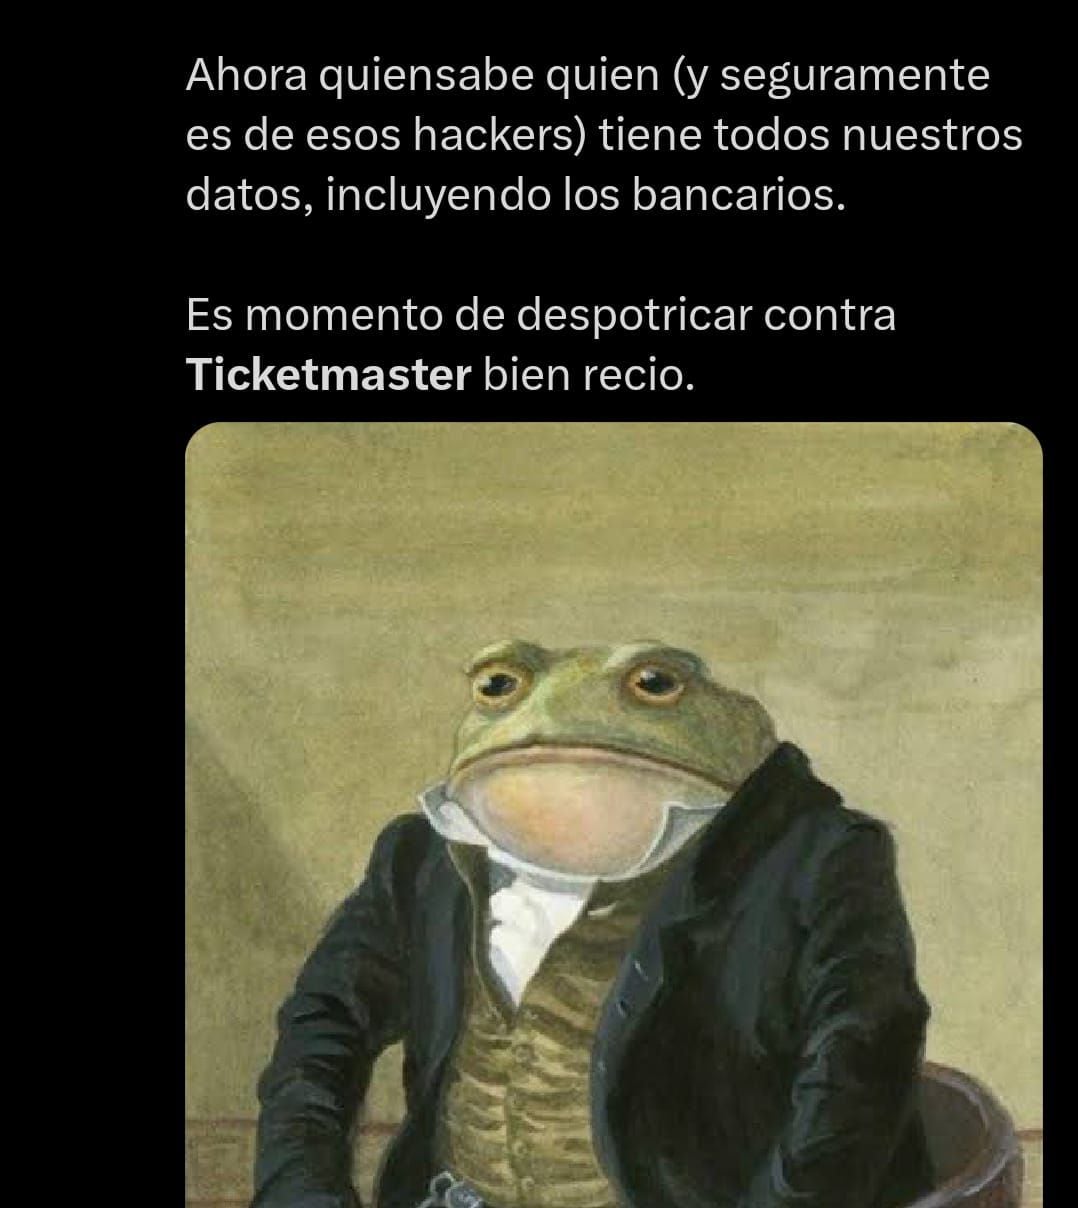 Ante el hackeo, usuarios pidieron 'funar' a Ticketmaster. (Foto: Redes sociales)